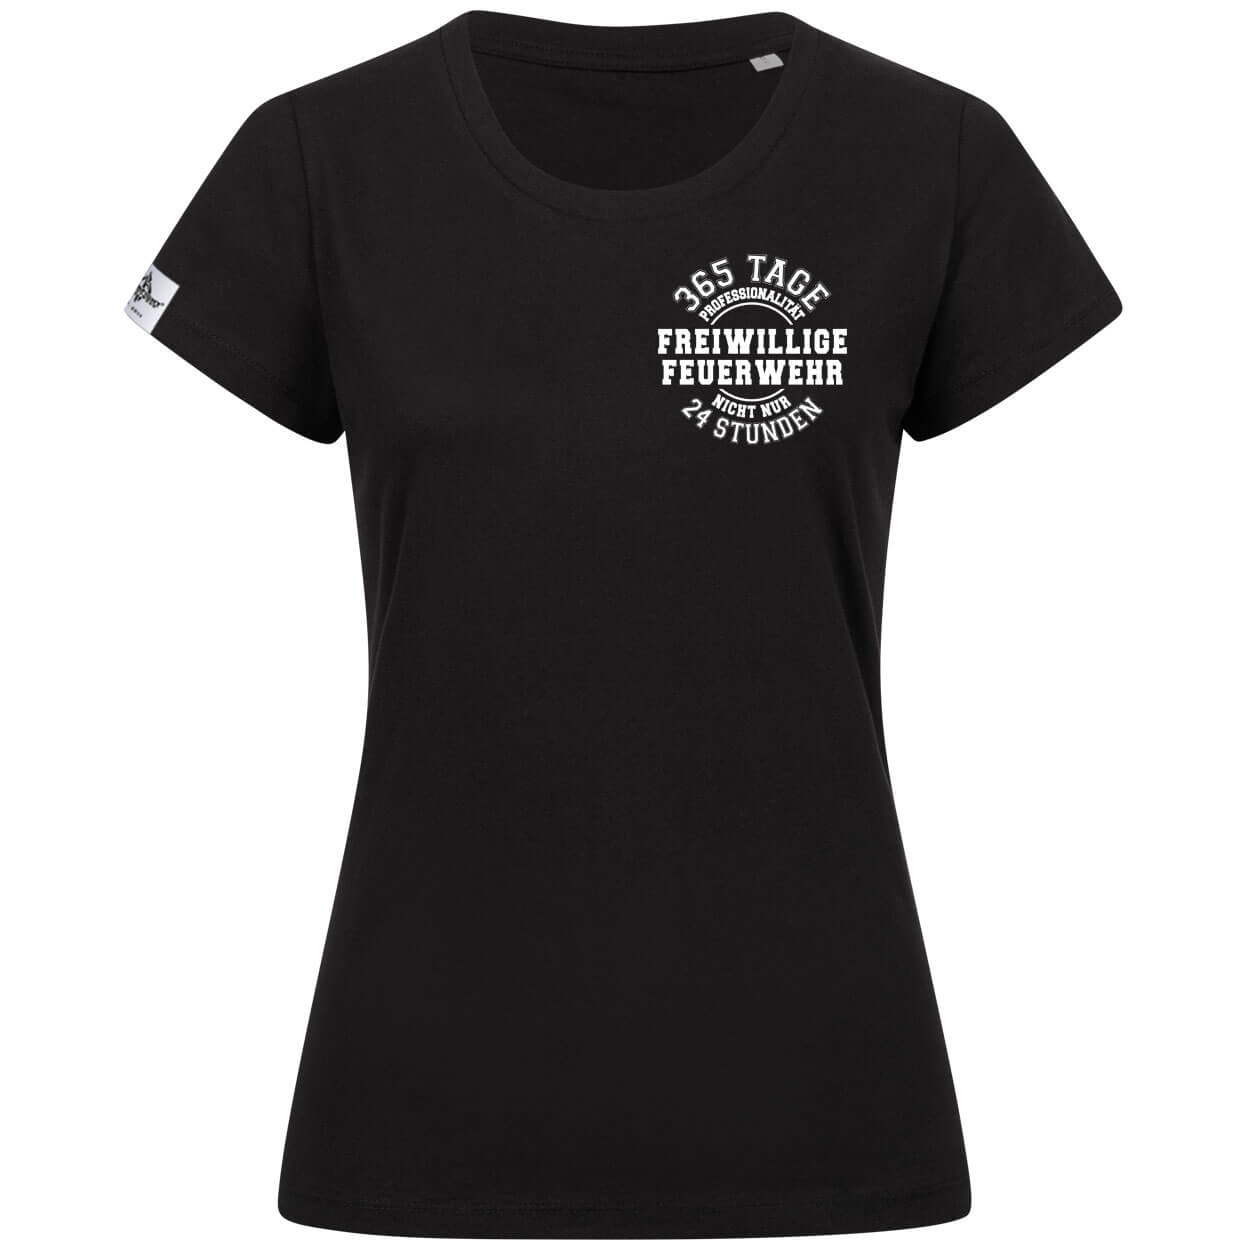 365 Tage Professionalität - Feuerwehr Frauen T-Shirt